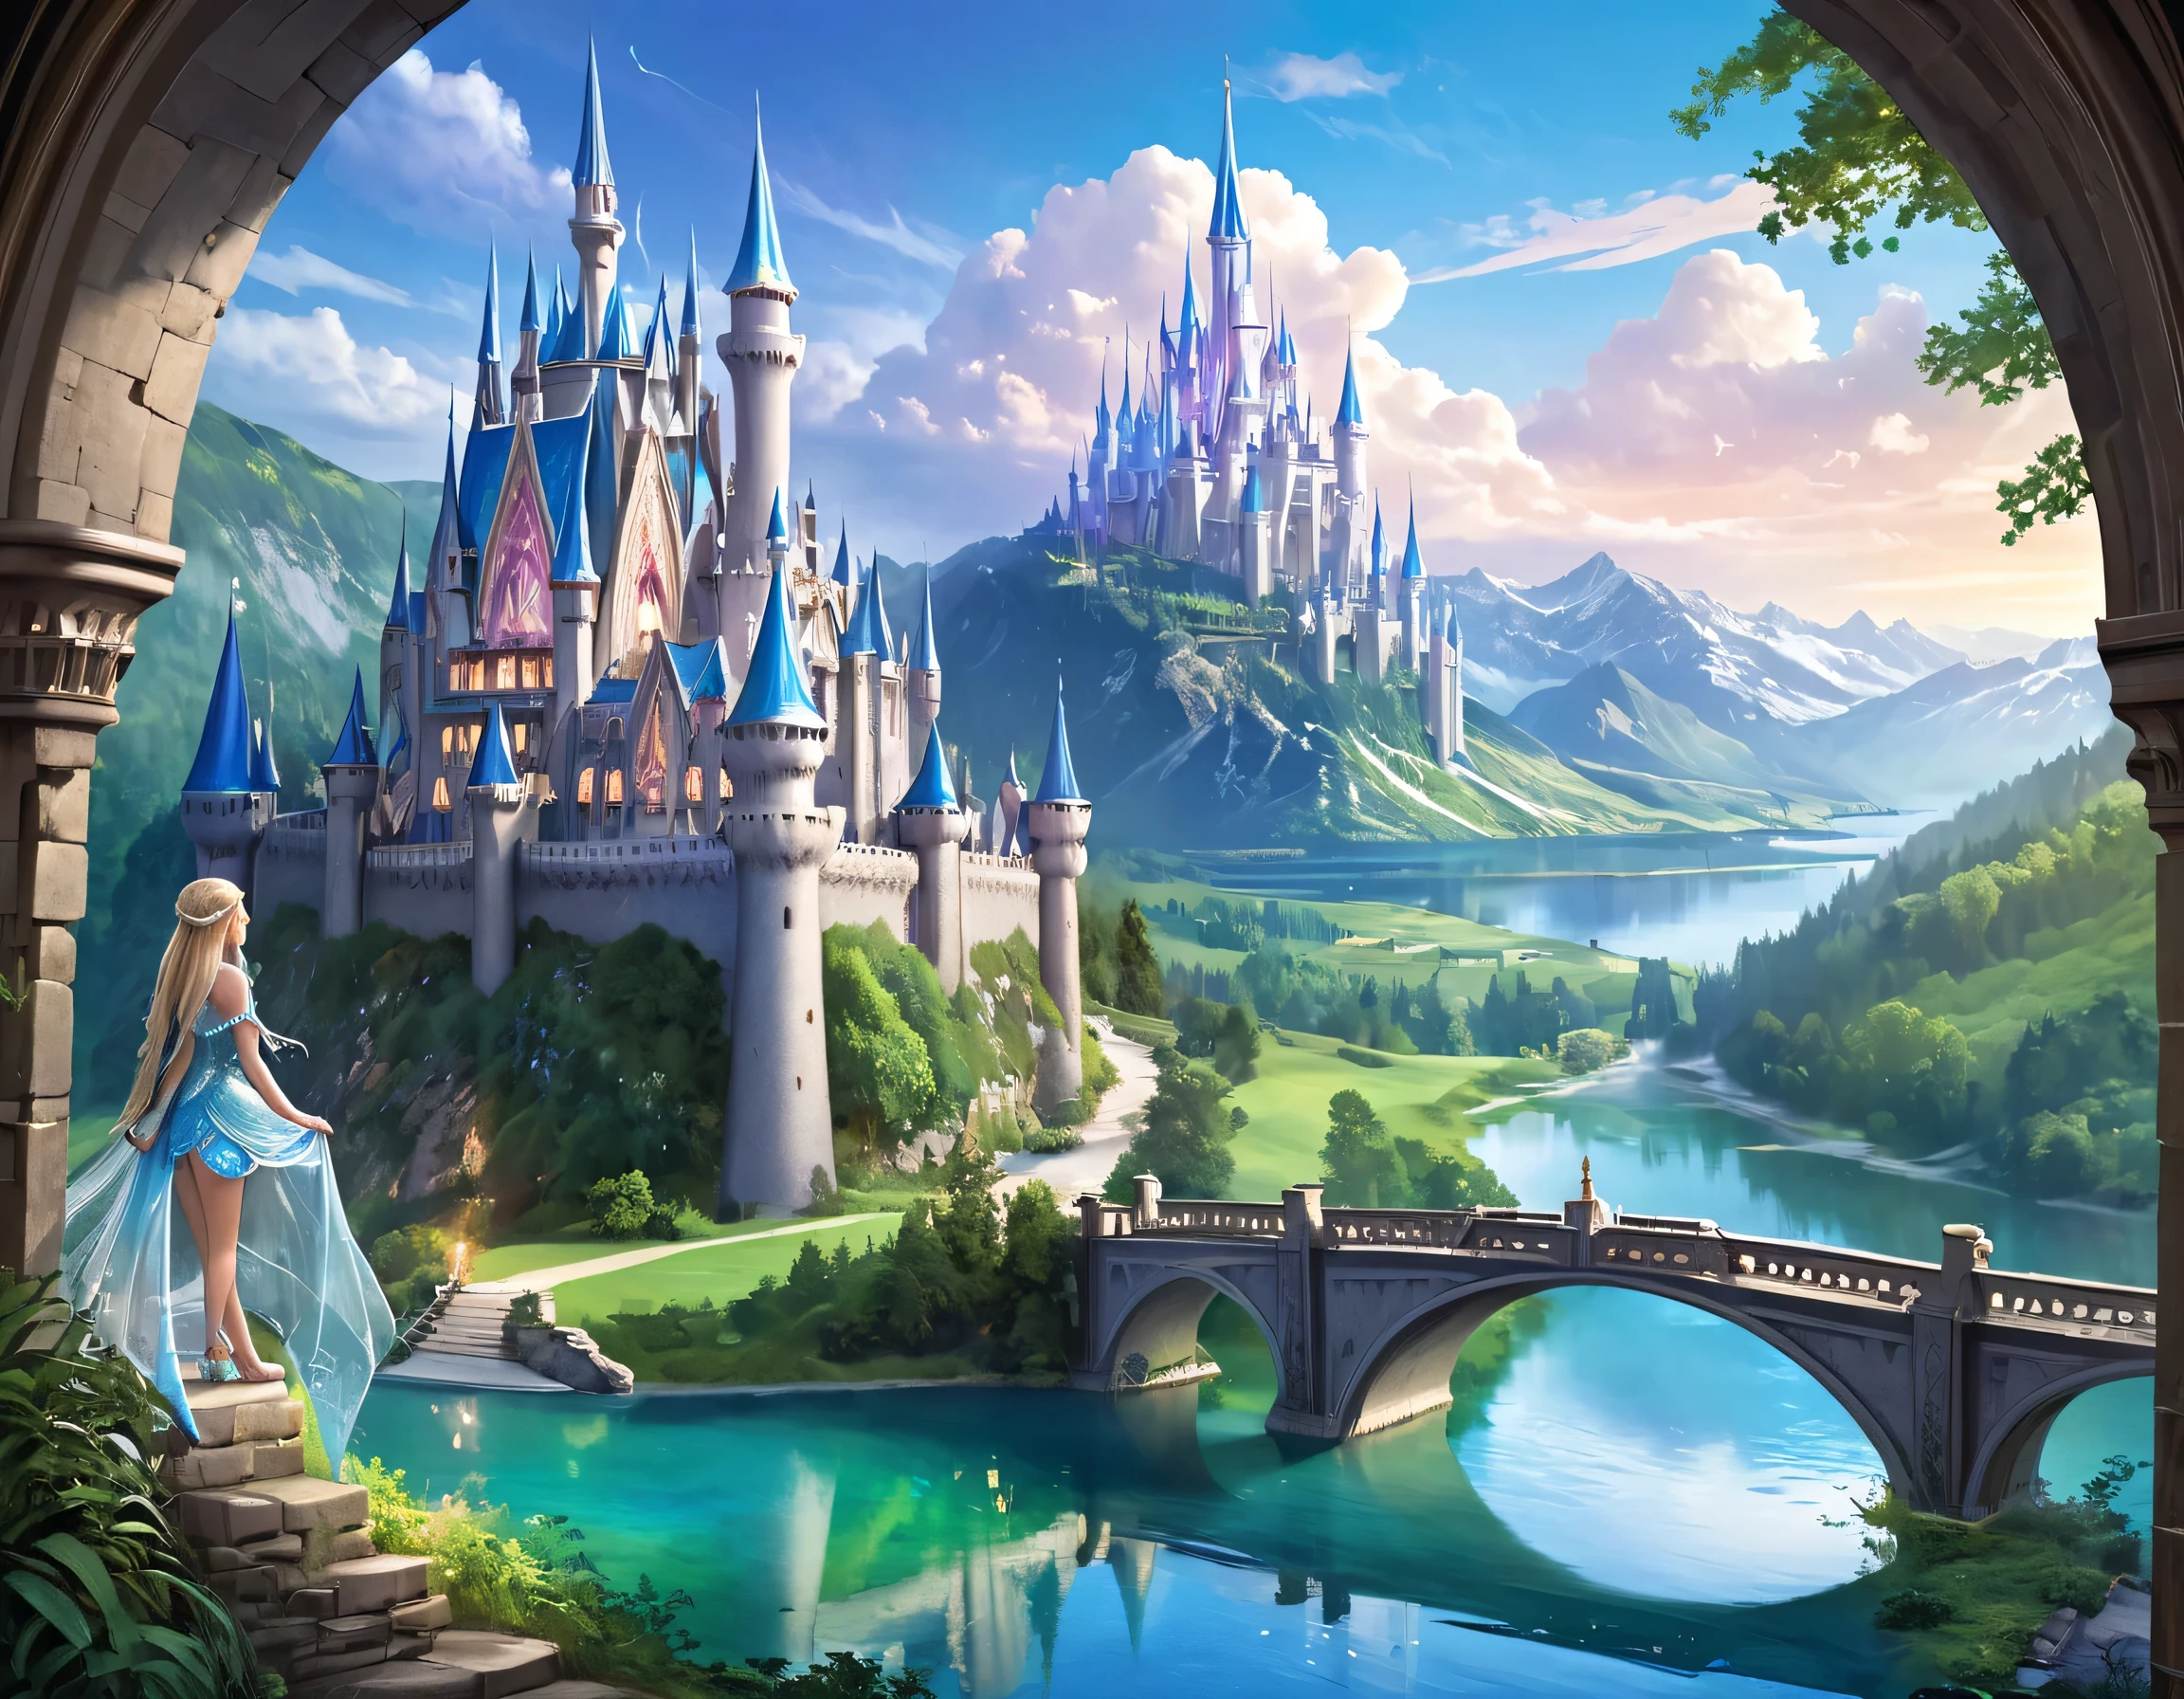 arte de fantasia, Arte RPG, uma princesa olhando pela janela para um castelo mágico, uma linda princesa élfica olhando pela janela para ver um castelo mágico, um impressionante castelo mais detalhado, com torres, pontes, um fosso, em pé no topo de uma montanha coloridaglazecd_Xl, Página de estilo de Brandon Woelfel